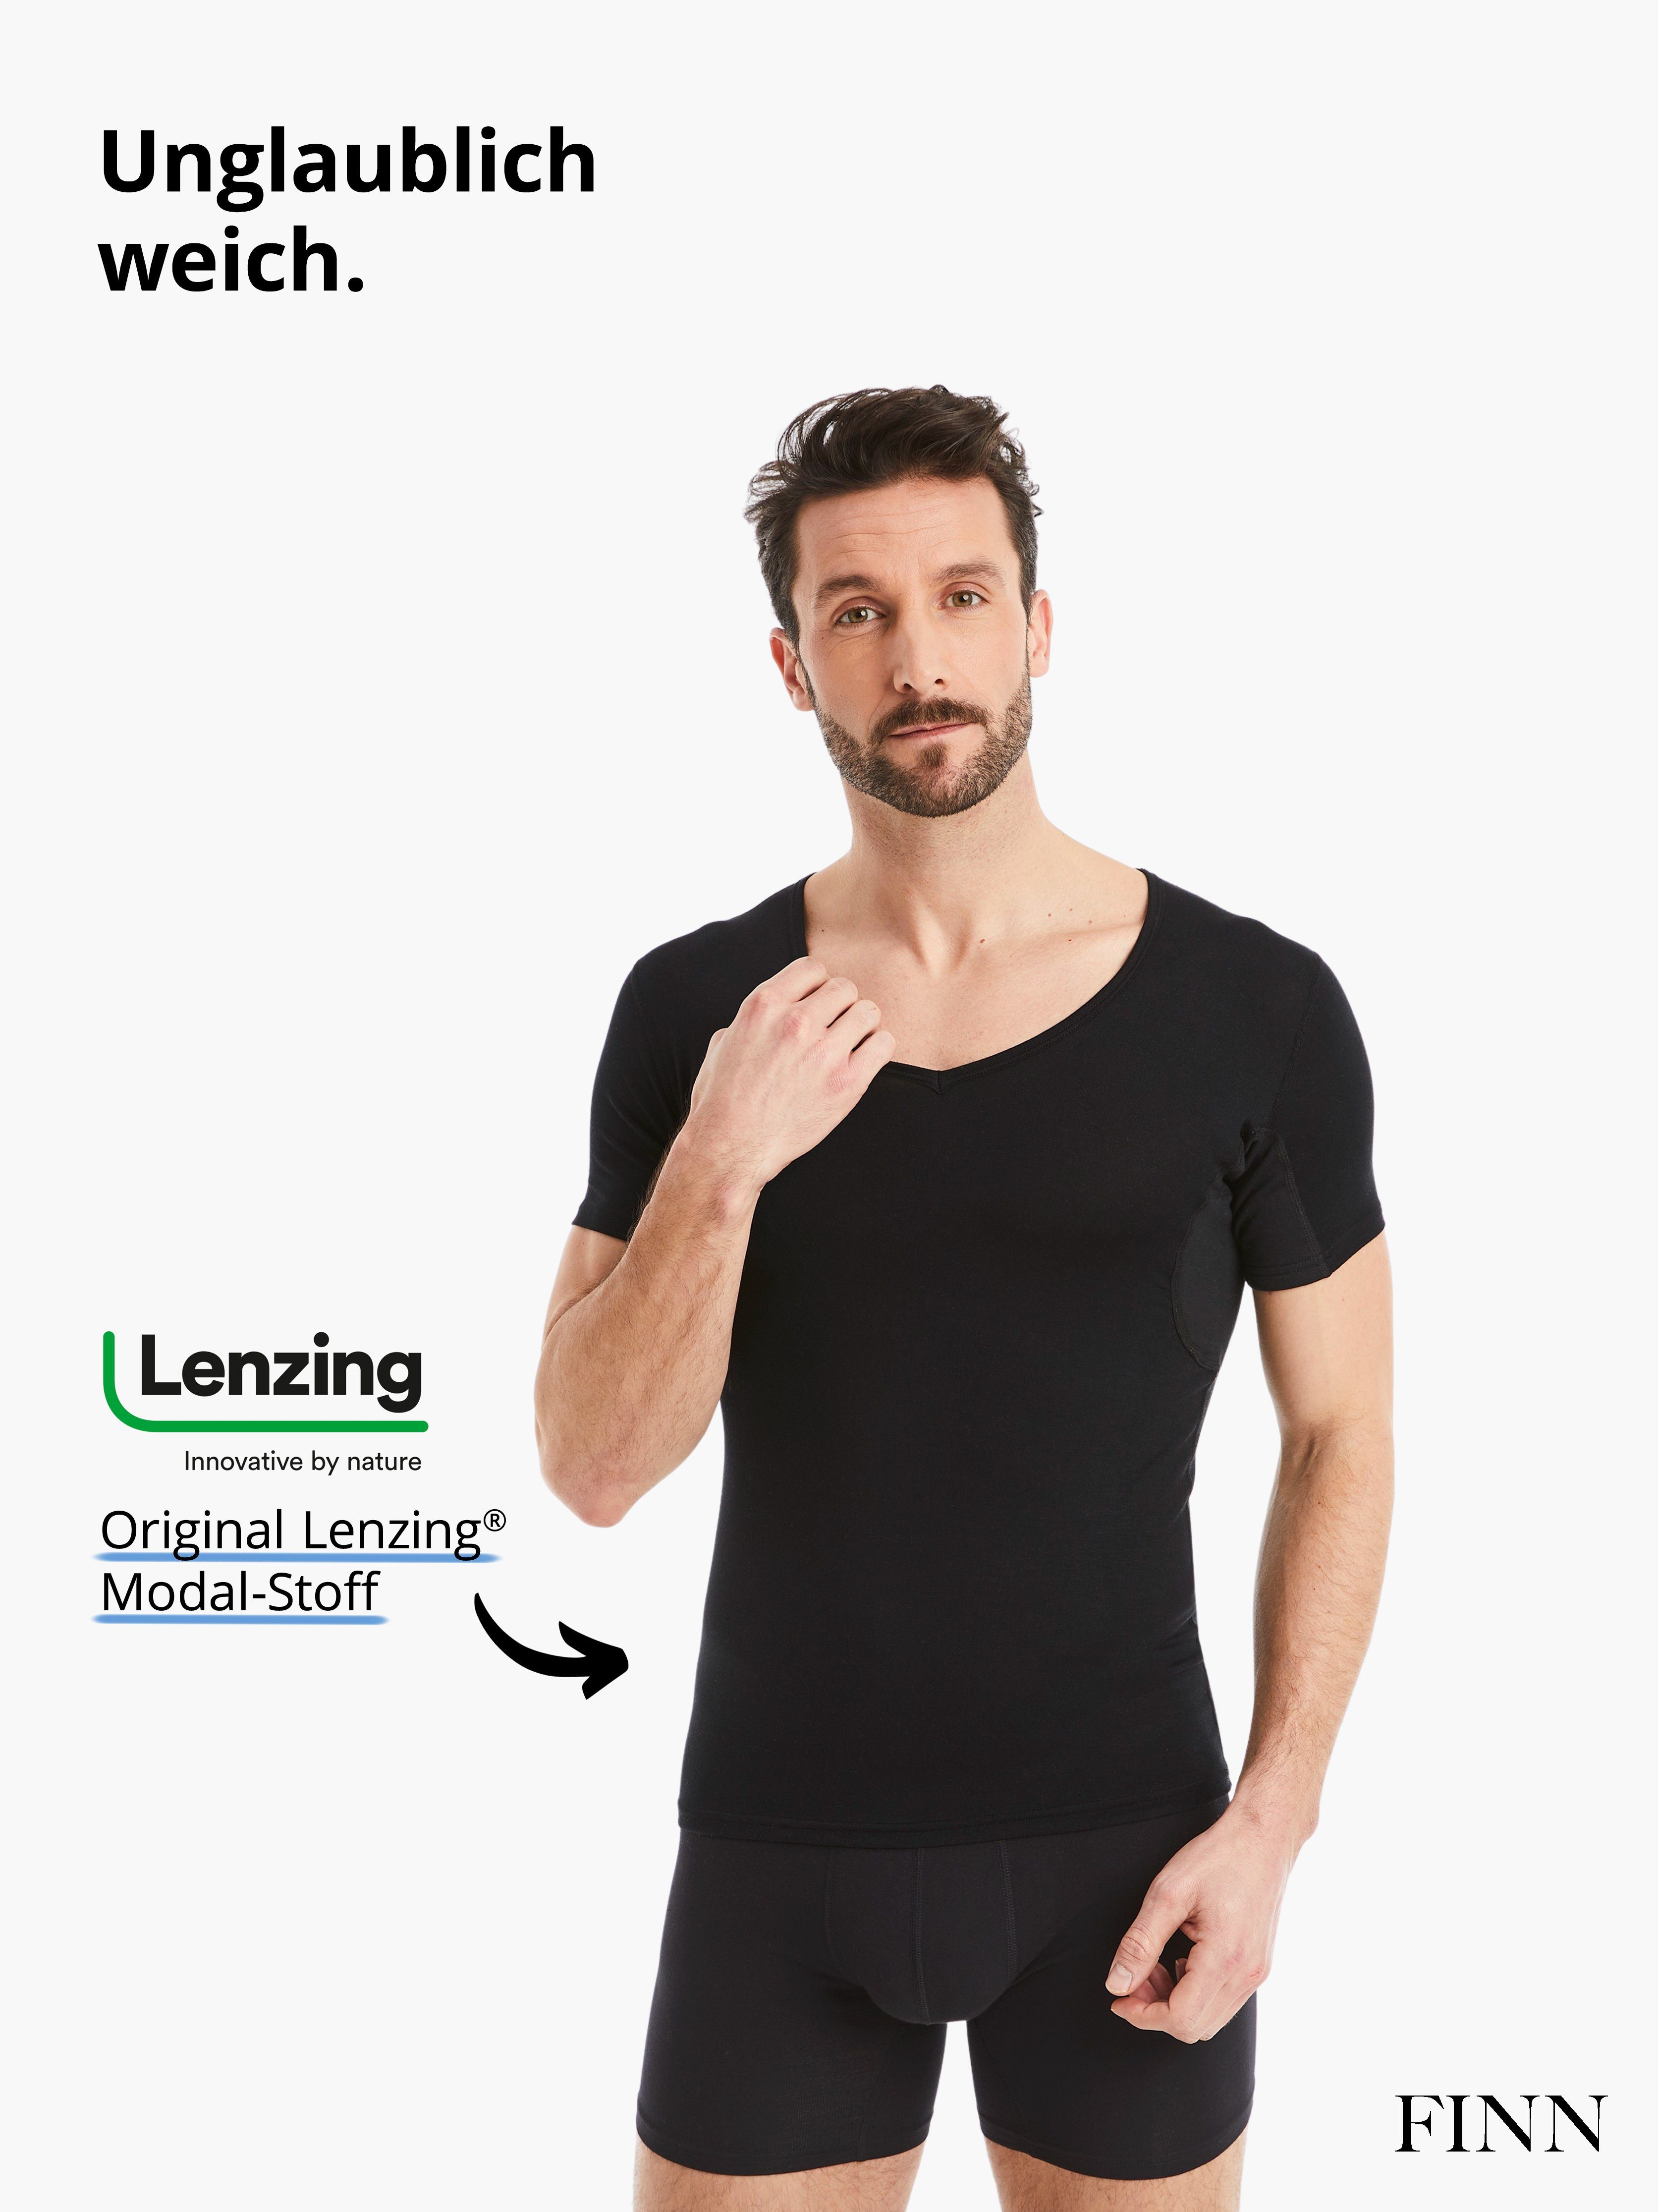 100% Schutz Schweißflecken, Schwarz Unterhemd Herren vor Anti-Schweiß Design Wirkung garantierte Unterhemd FINN